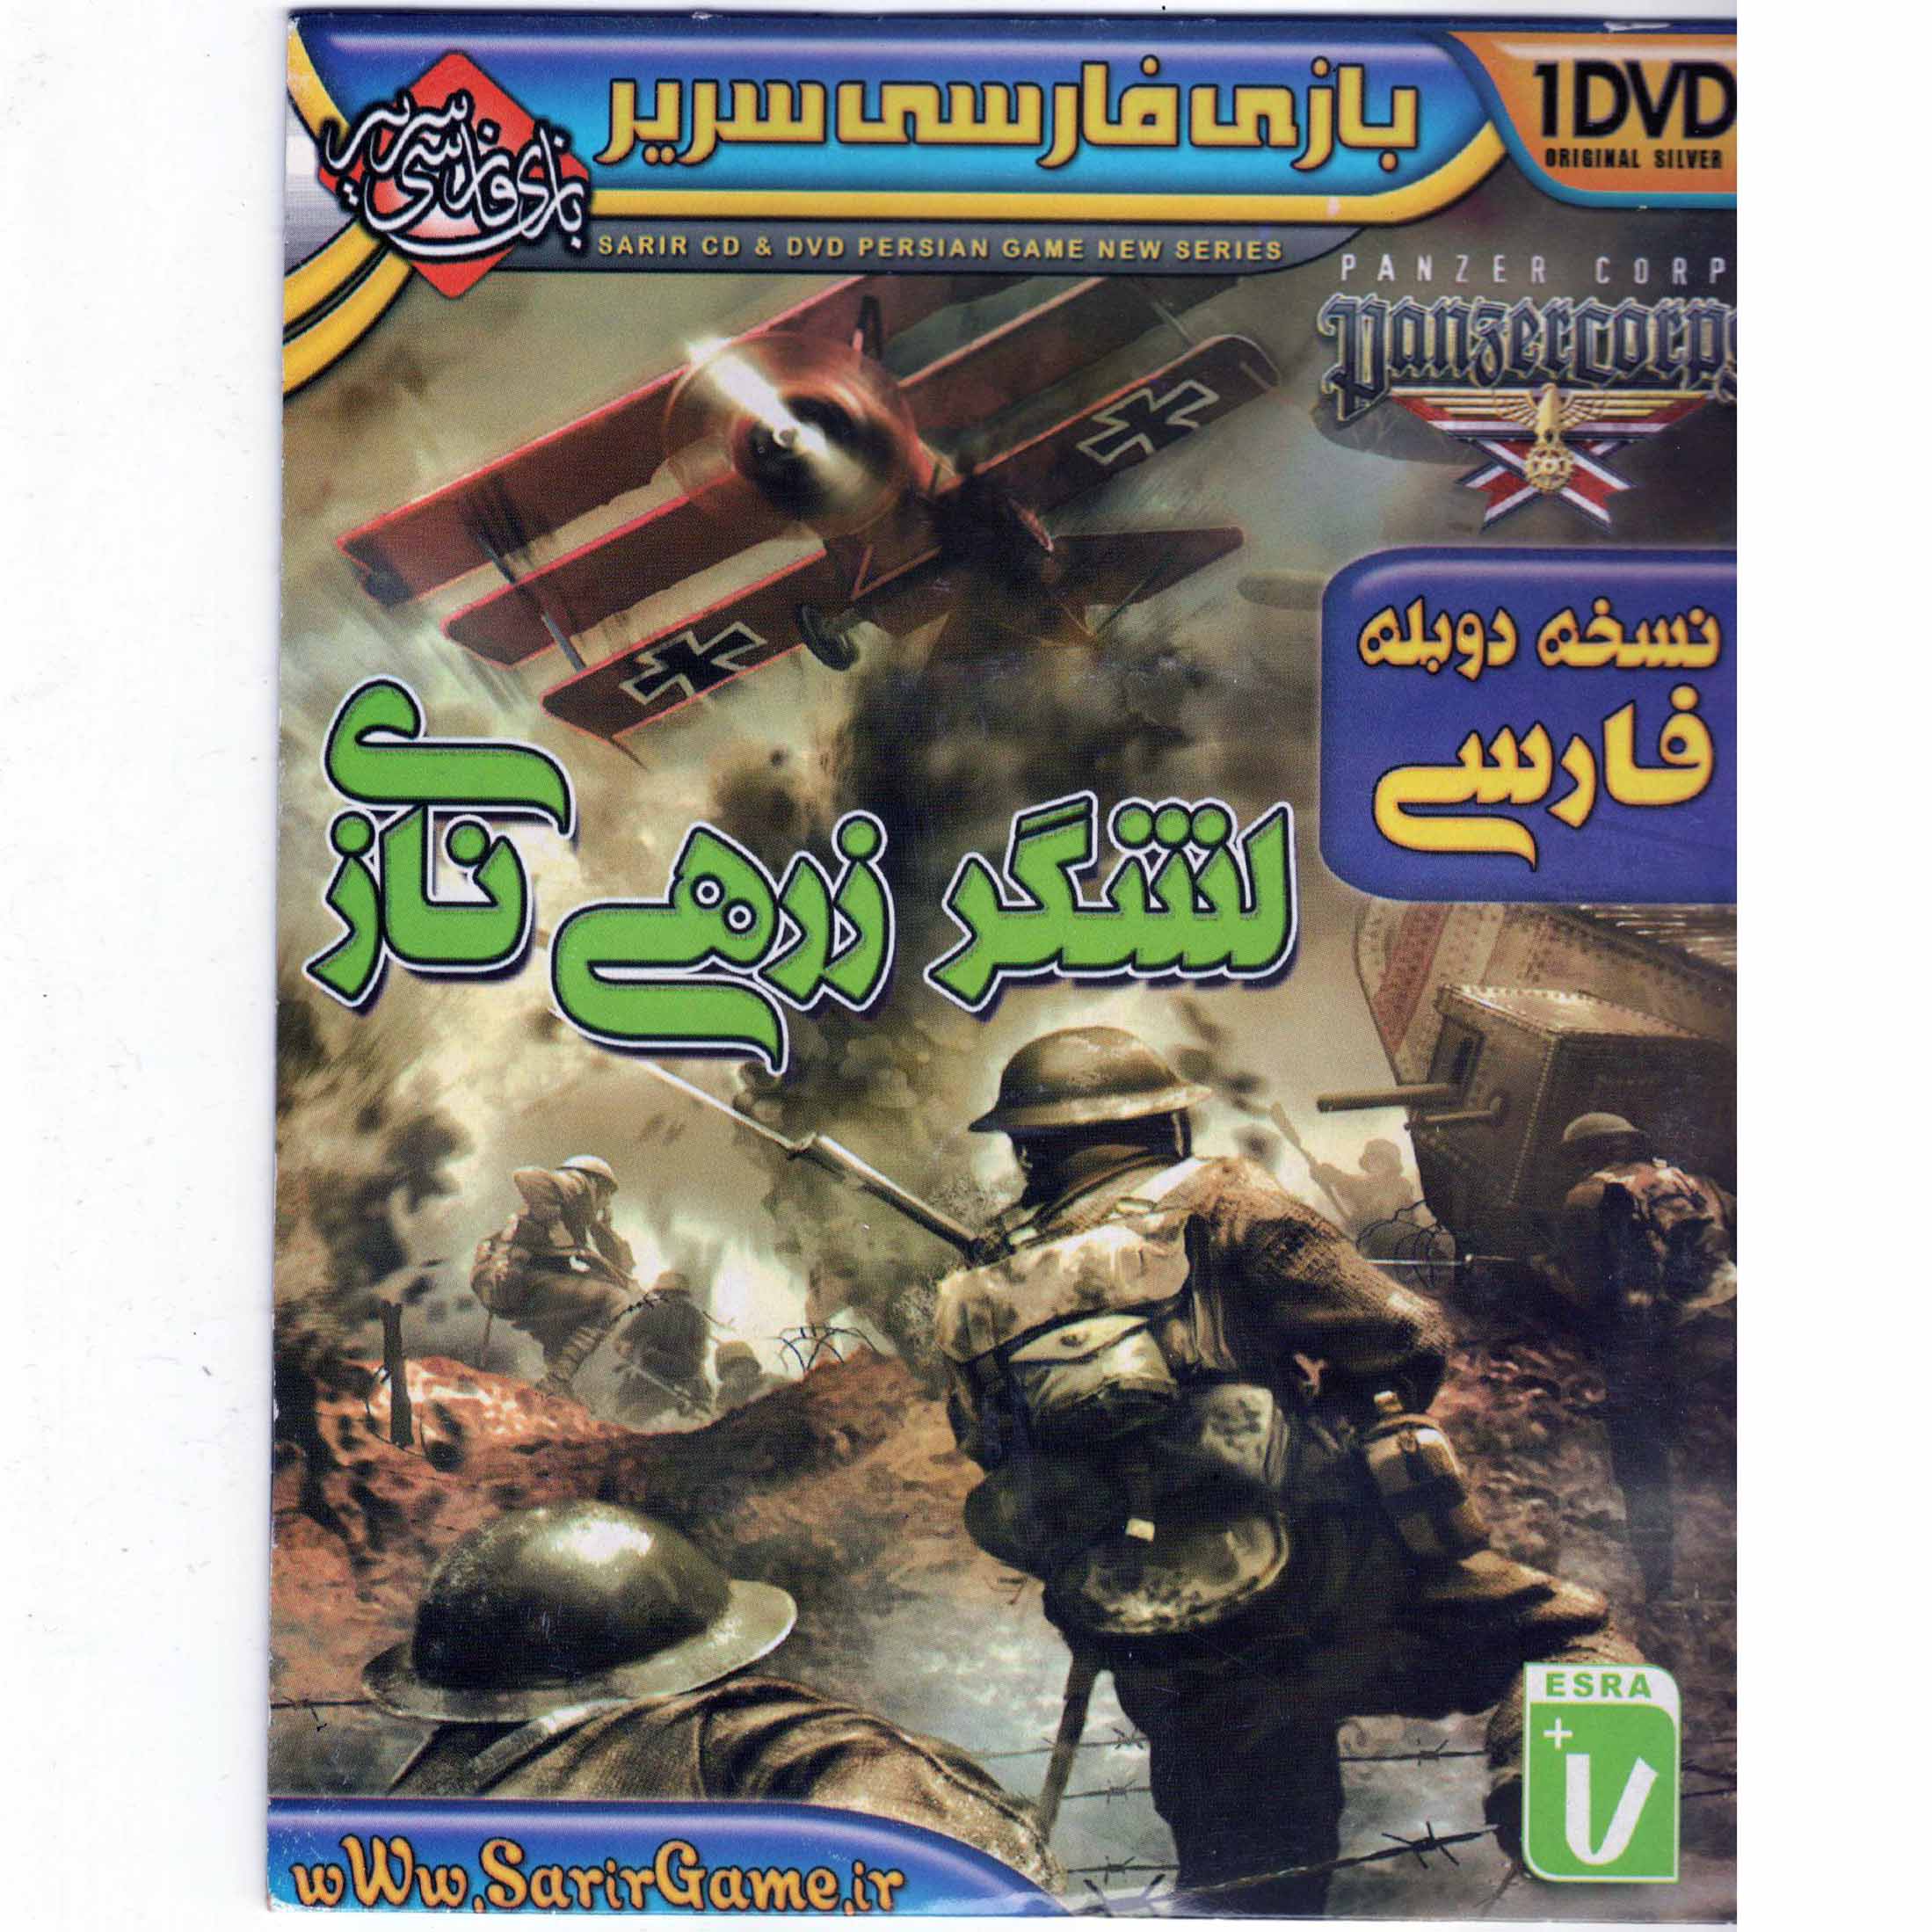  بازی لشگر زرهی نازی دوبله فارسی مخصوص PC